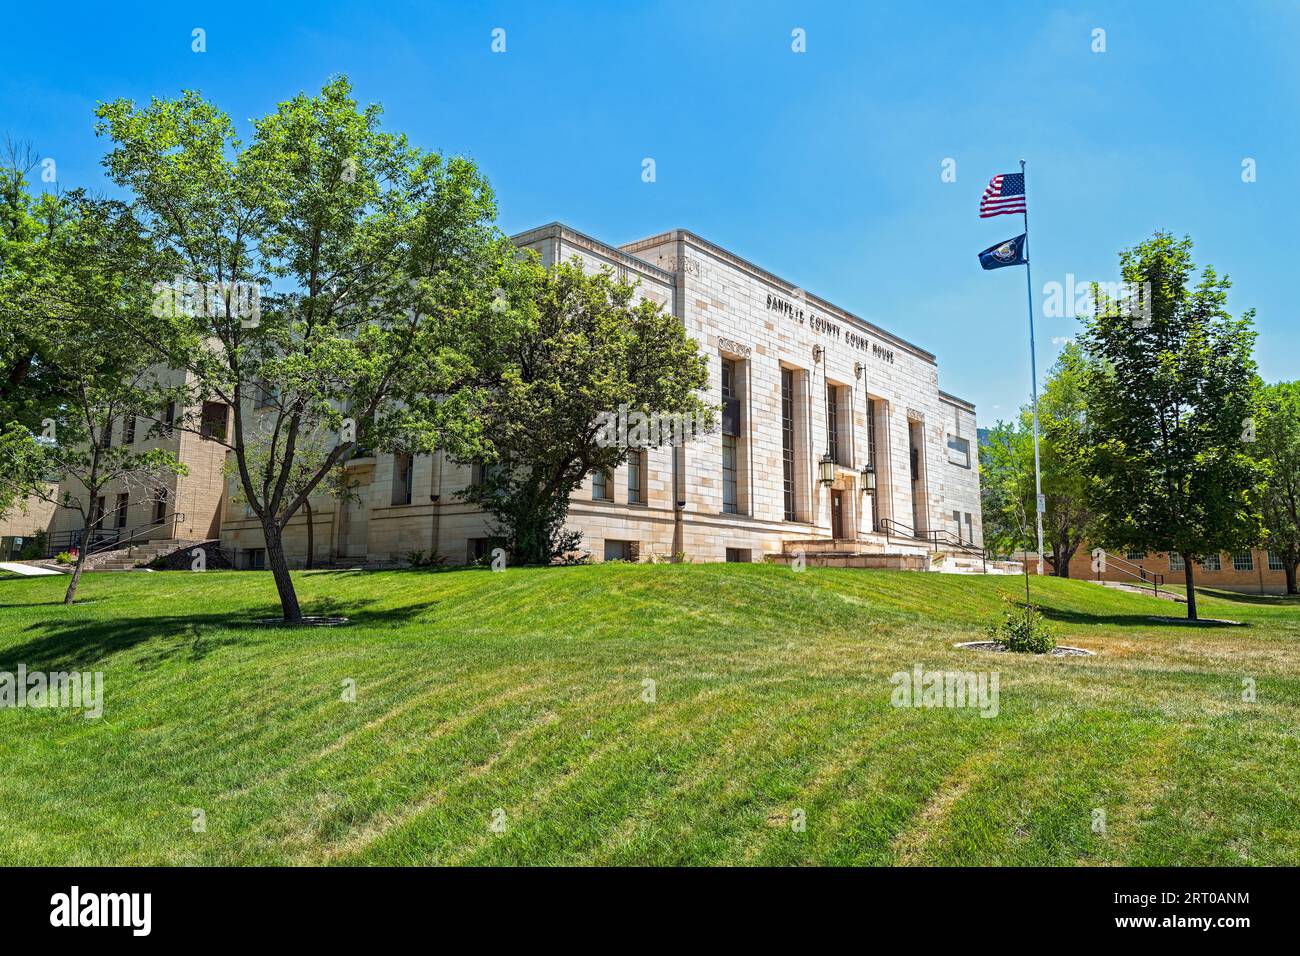 Le palais de justice du comté de Sanpete est situé sur un terrain fraîchement tondu à Manti, Utah, États-Unis Banque D'Images